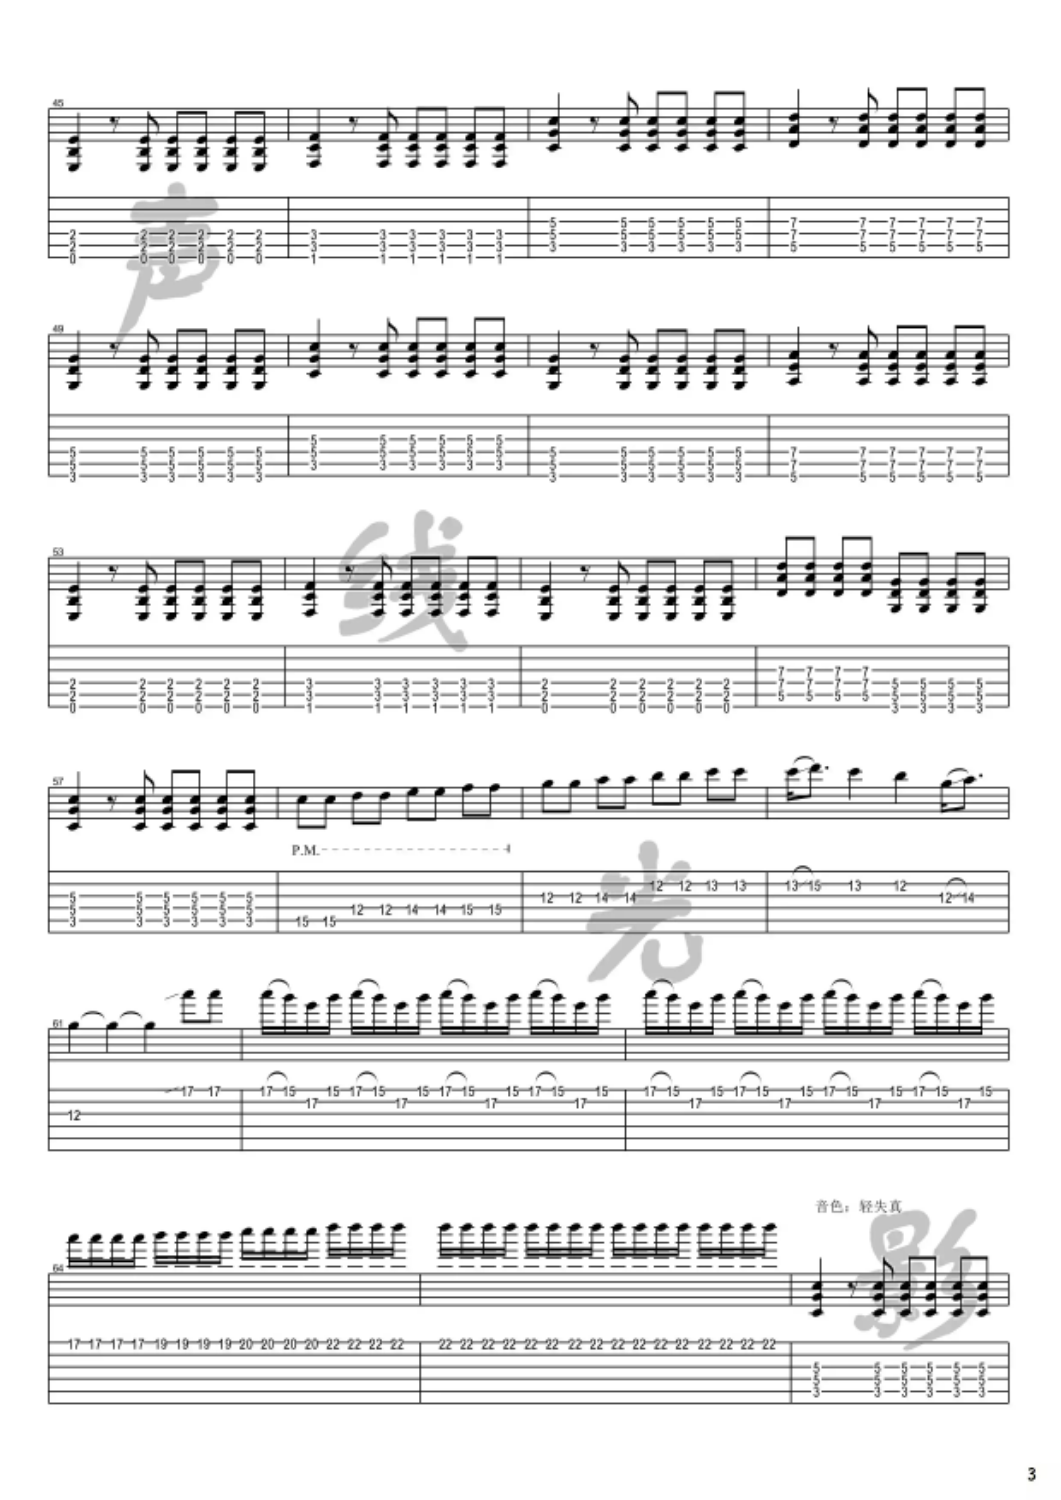 缝纫机乐队《丁建国写的歌》吉他谱-Guitar Music Score